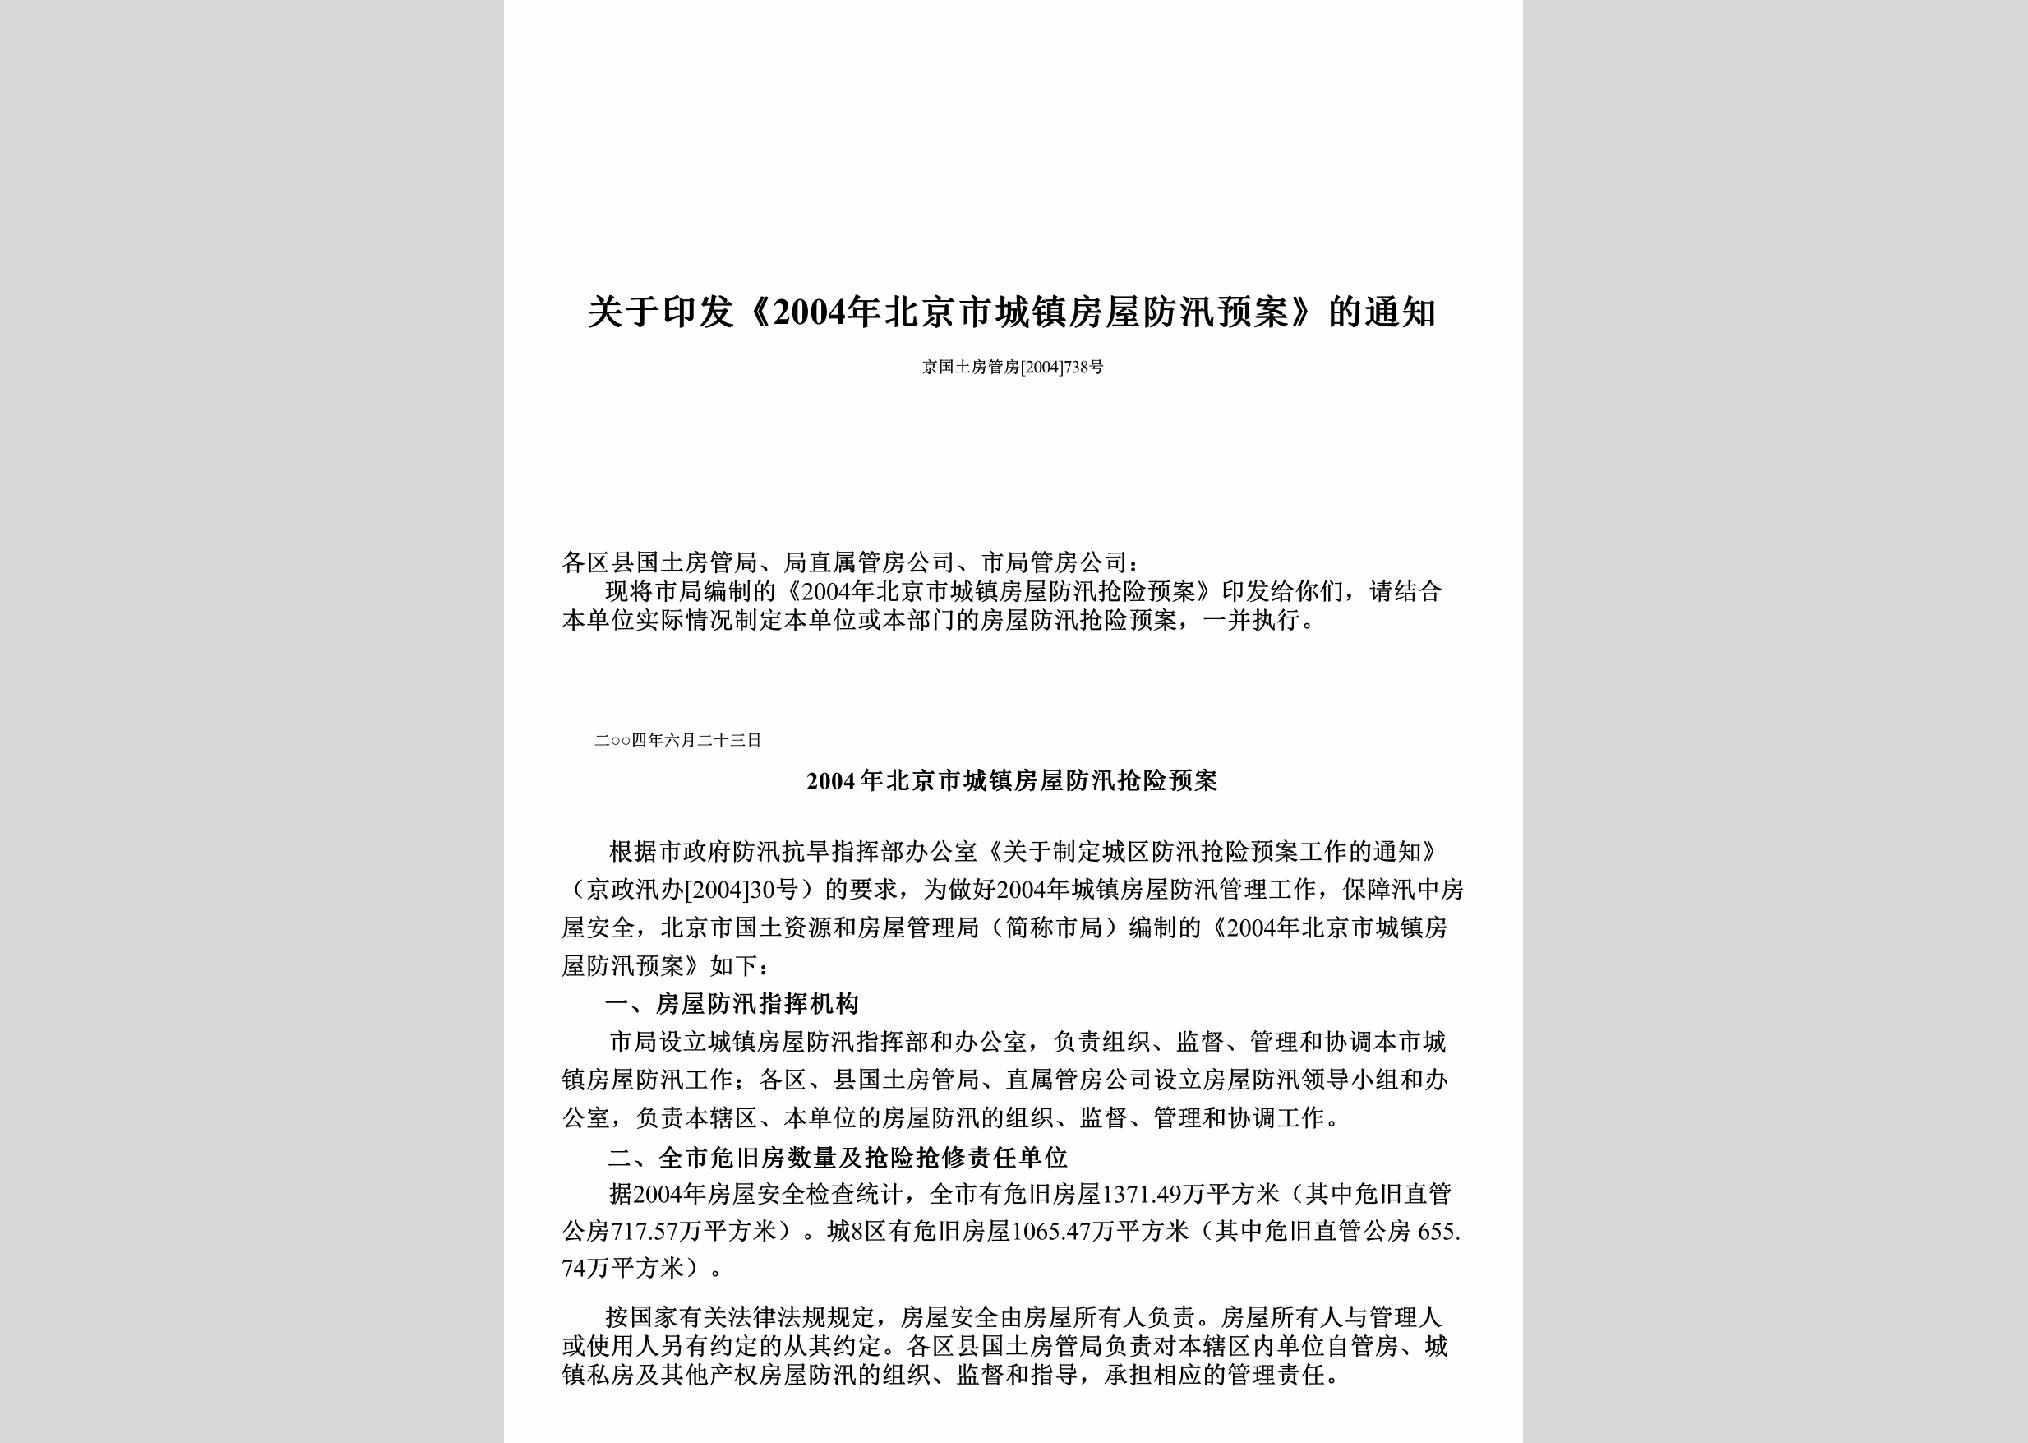 京国土房管房[2004]738号：关于印发《2004年北京市城镇房屋防汛预案》的通知